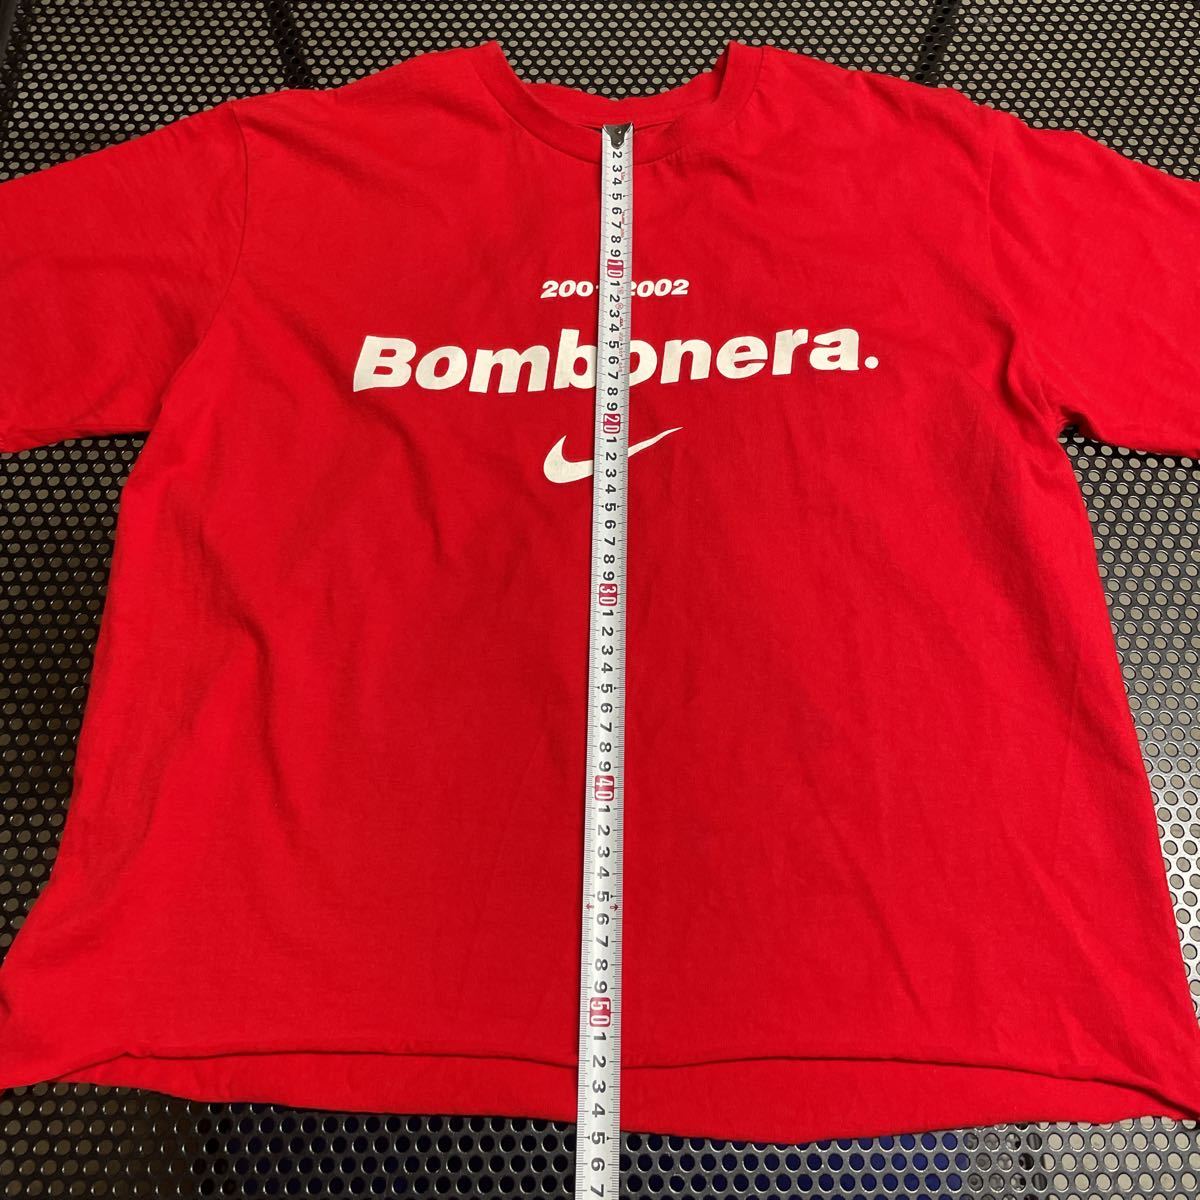 レア ナイキ NIKE ソフ soph fcrb 2001 2002 bombonera 半袖 Tシャツ 赤 レッド スソカットされてますbristol_画像5